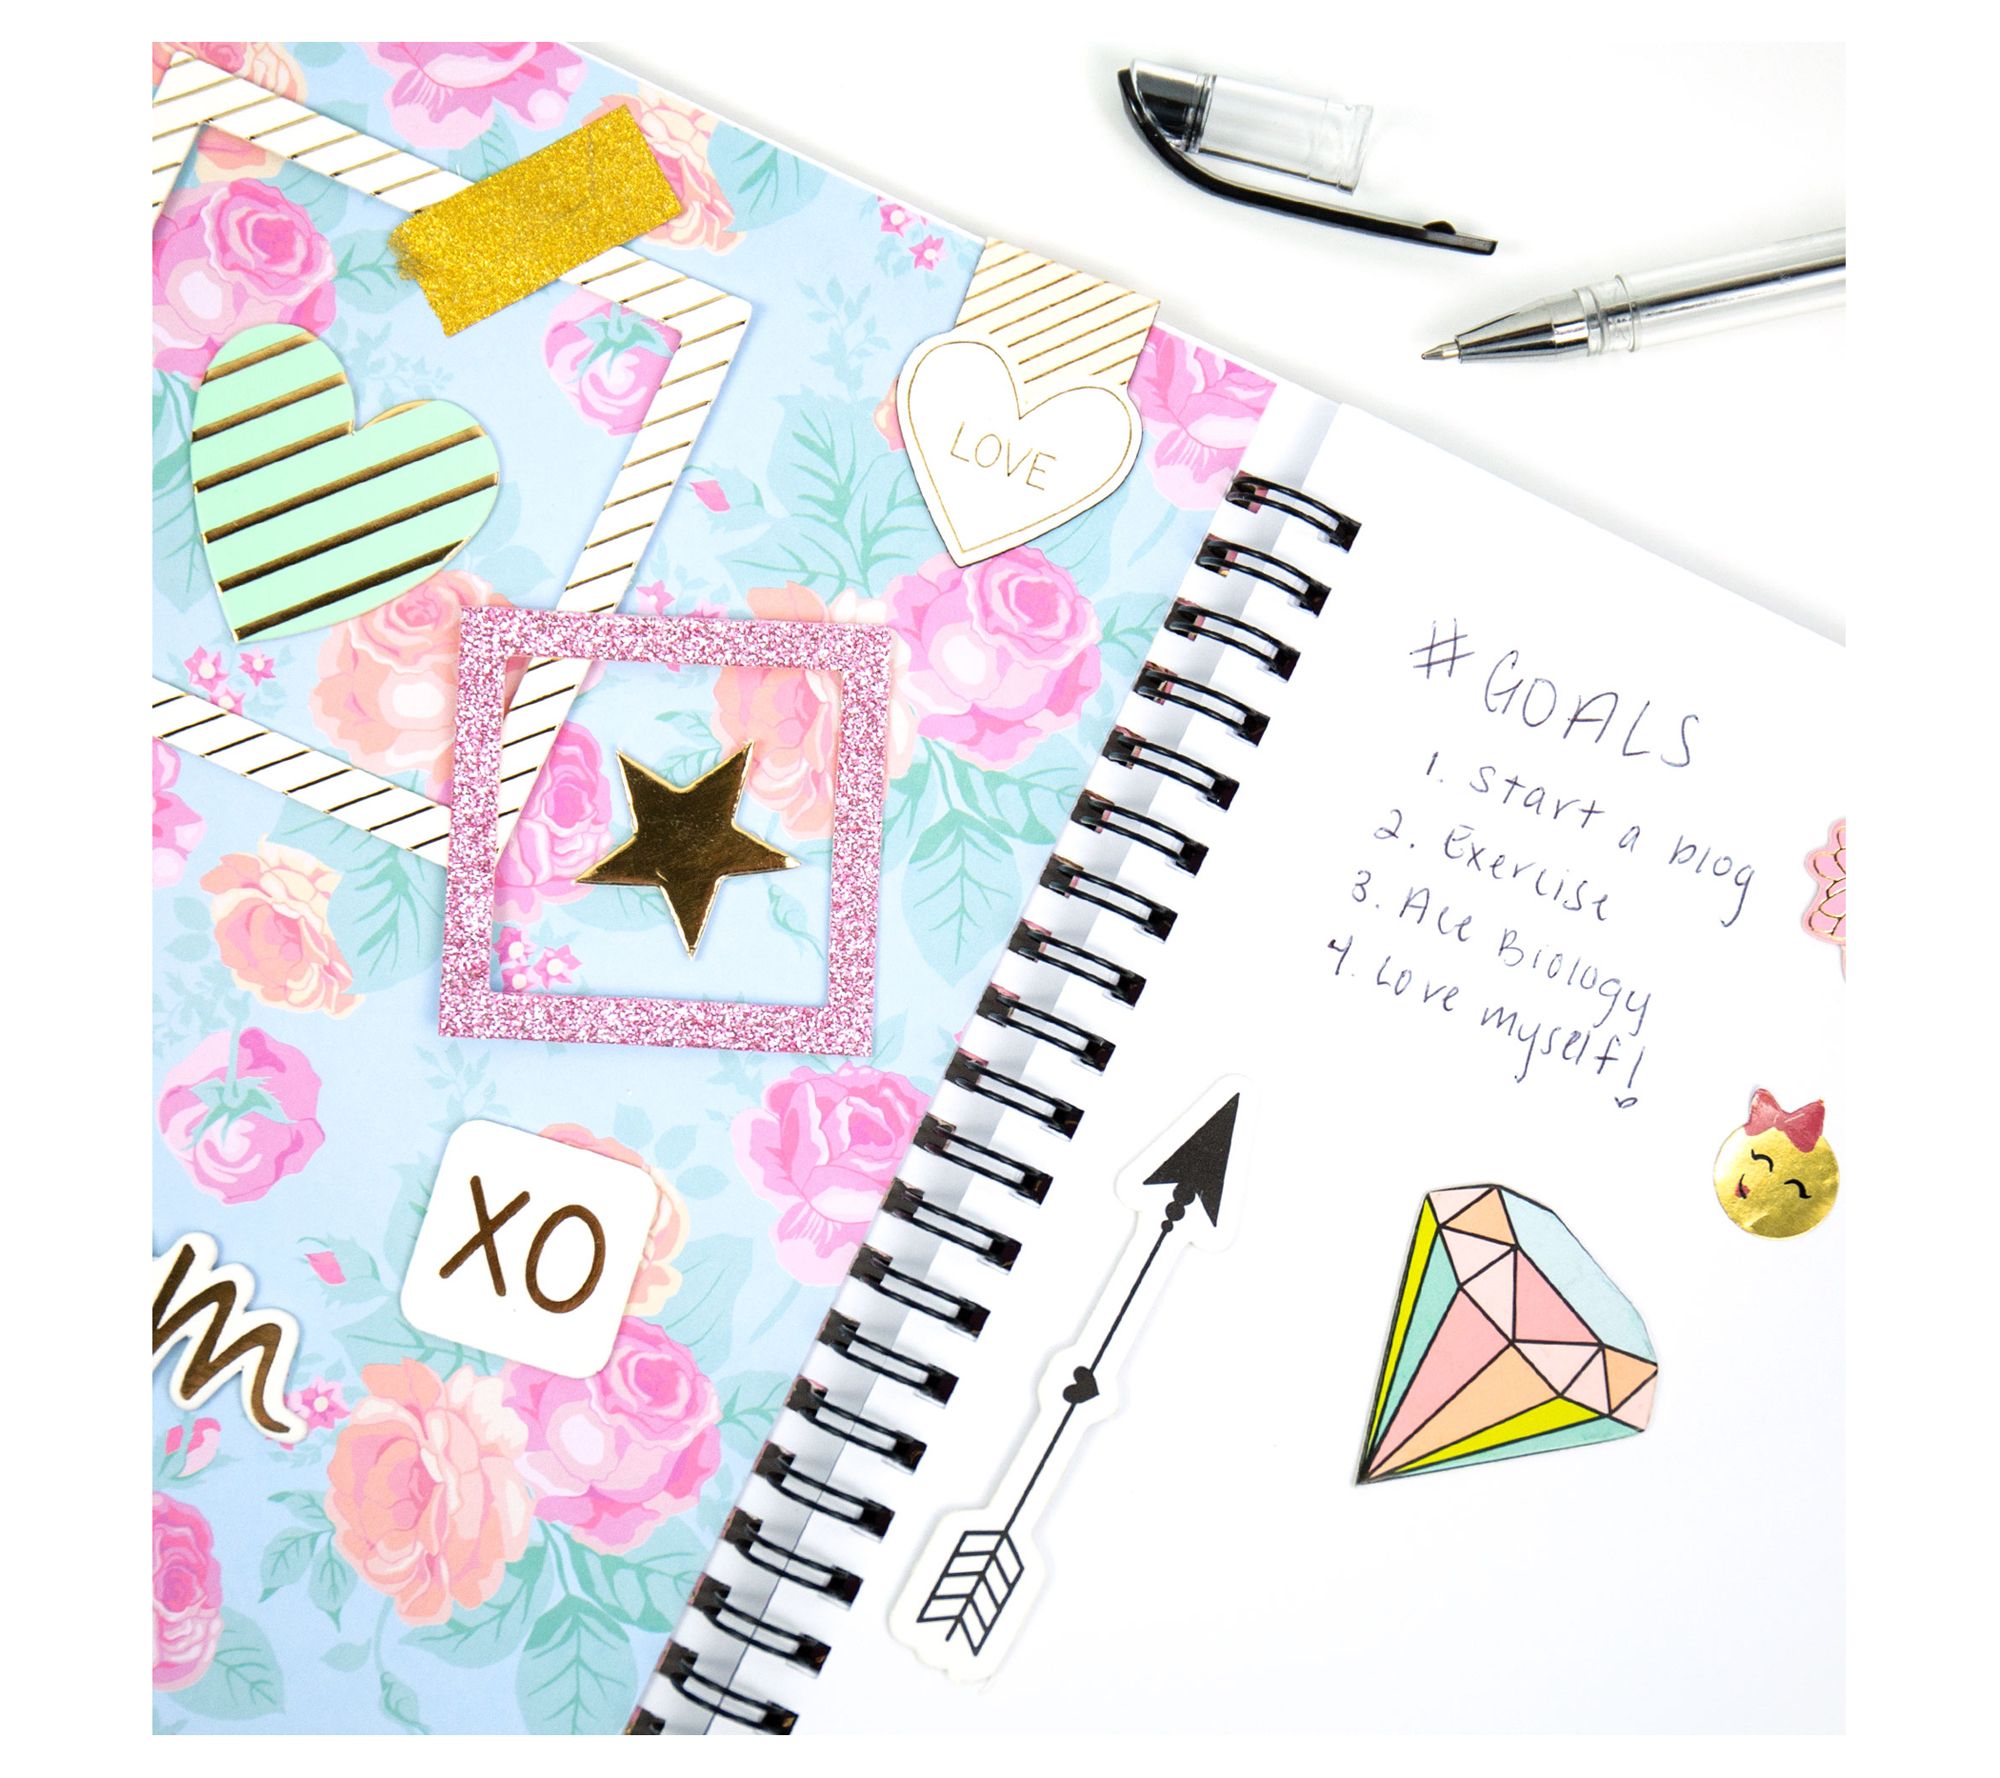 STMT DIY Journaling Set – Libby Lou's